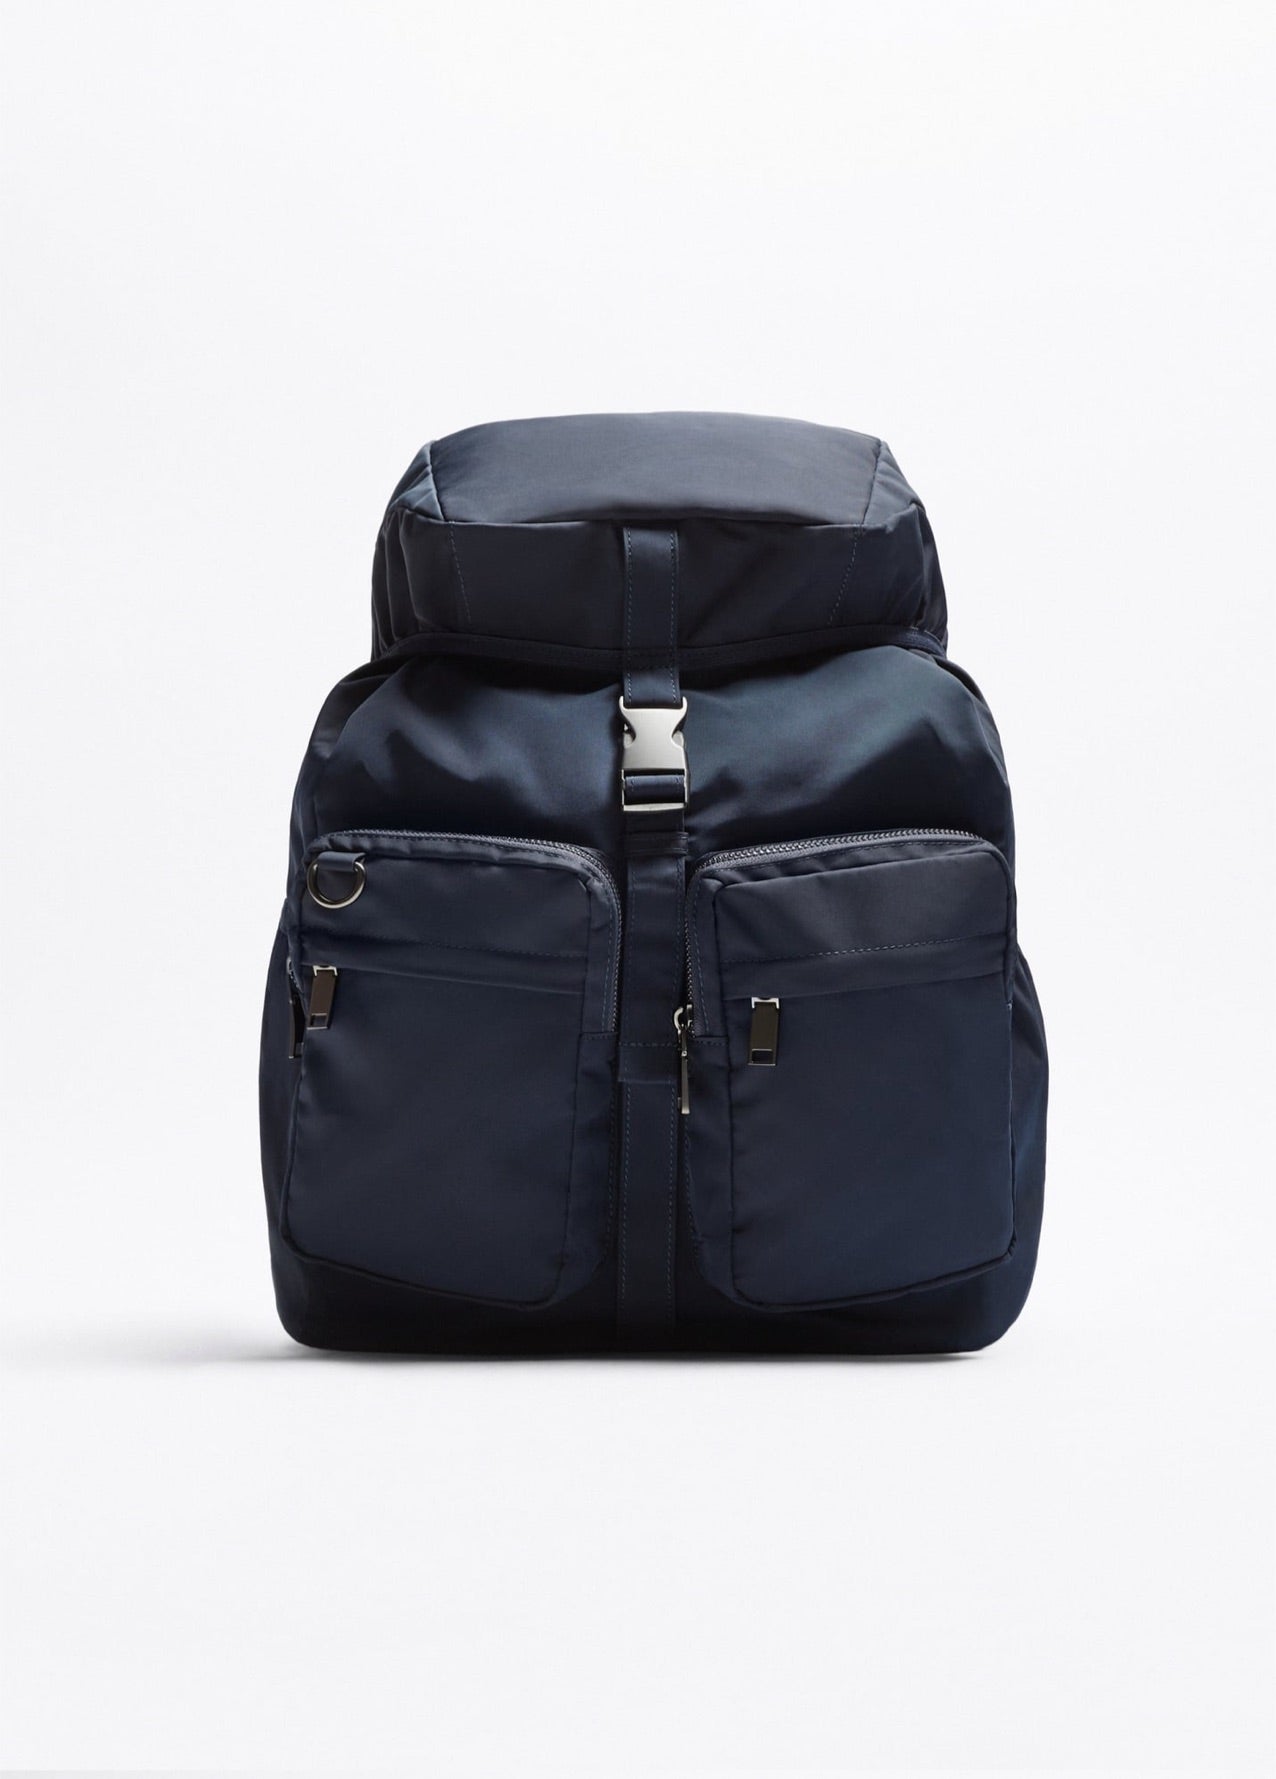 Zara explorer backpack